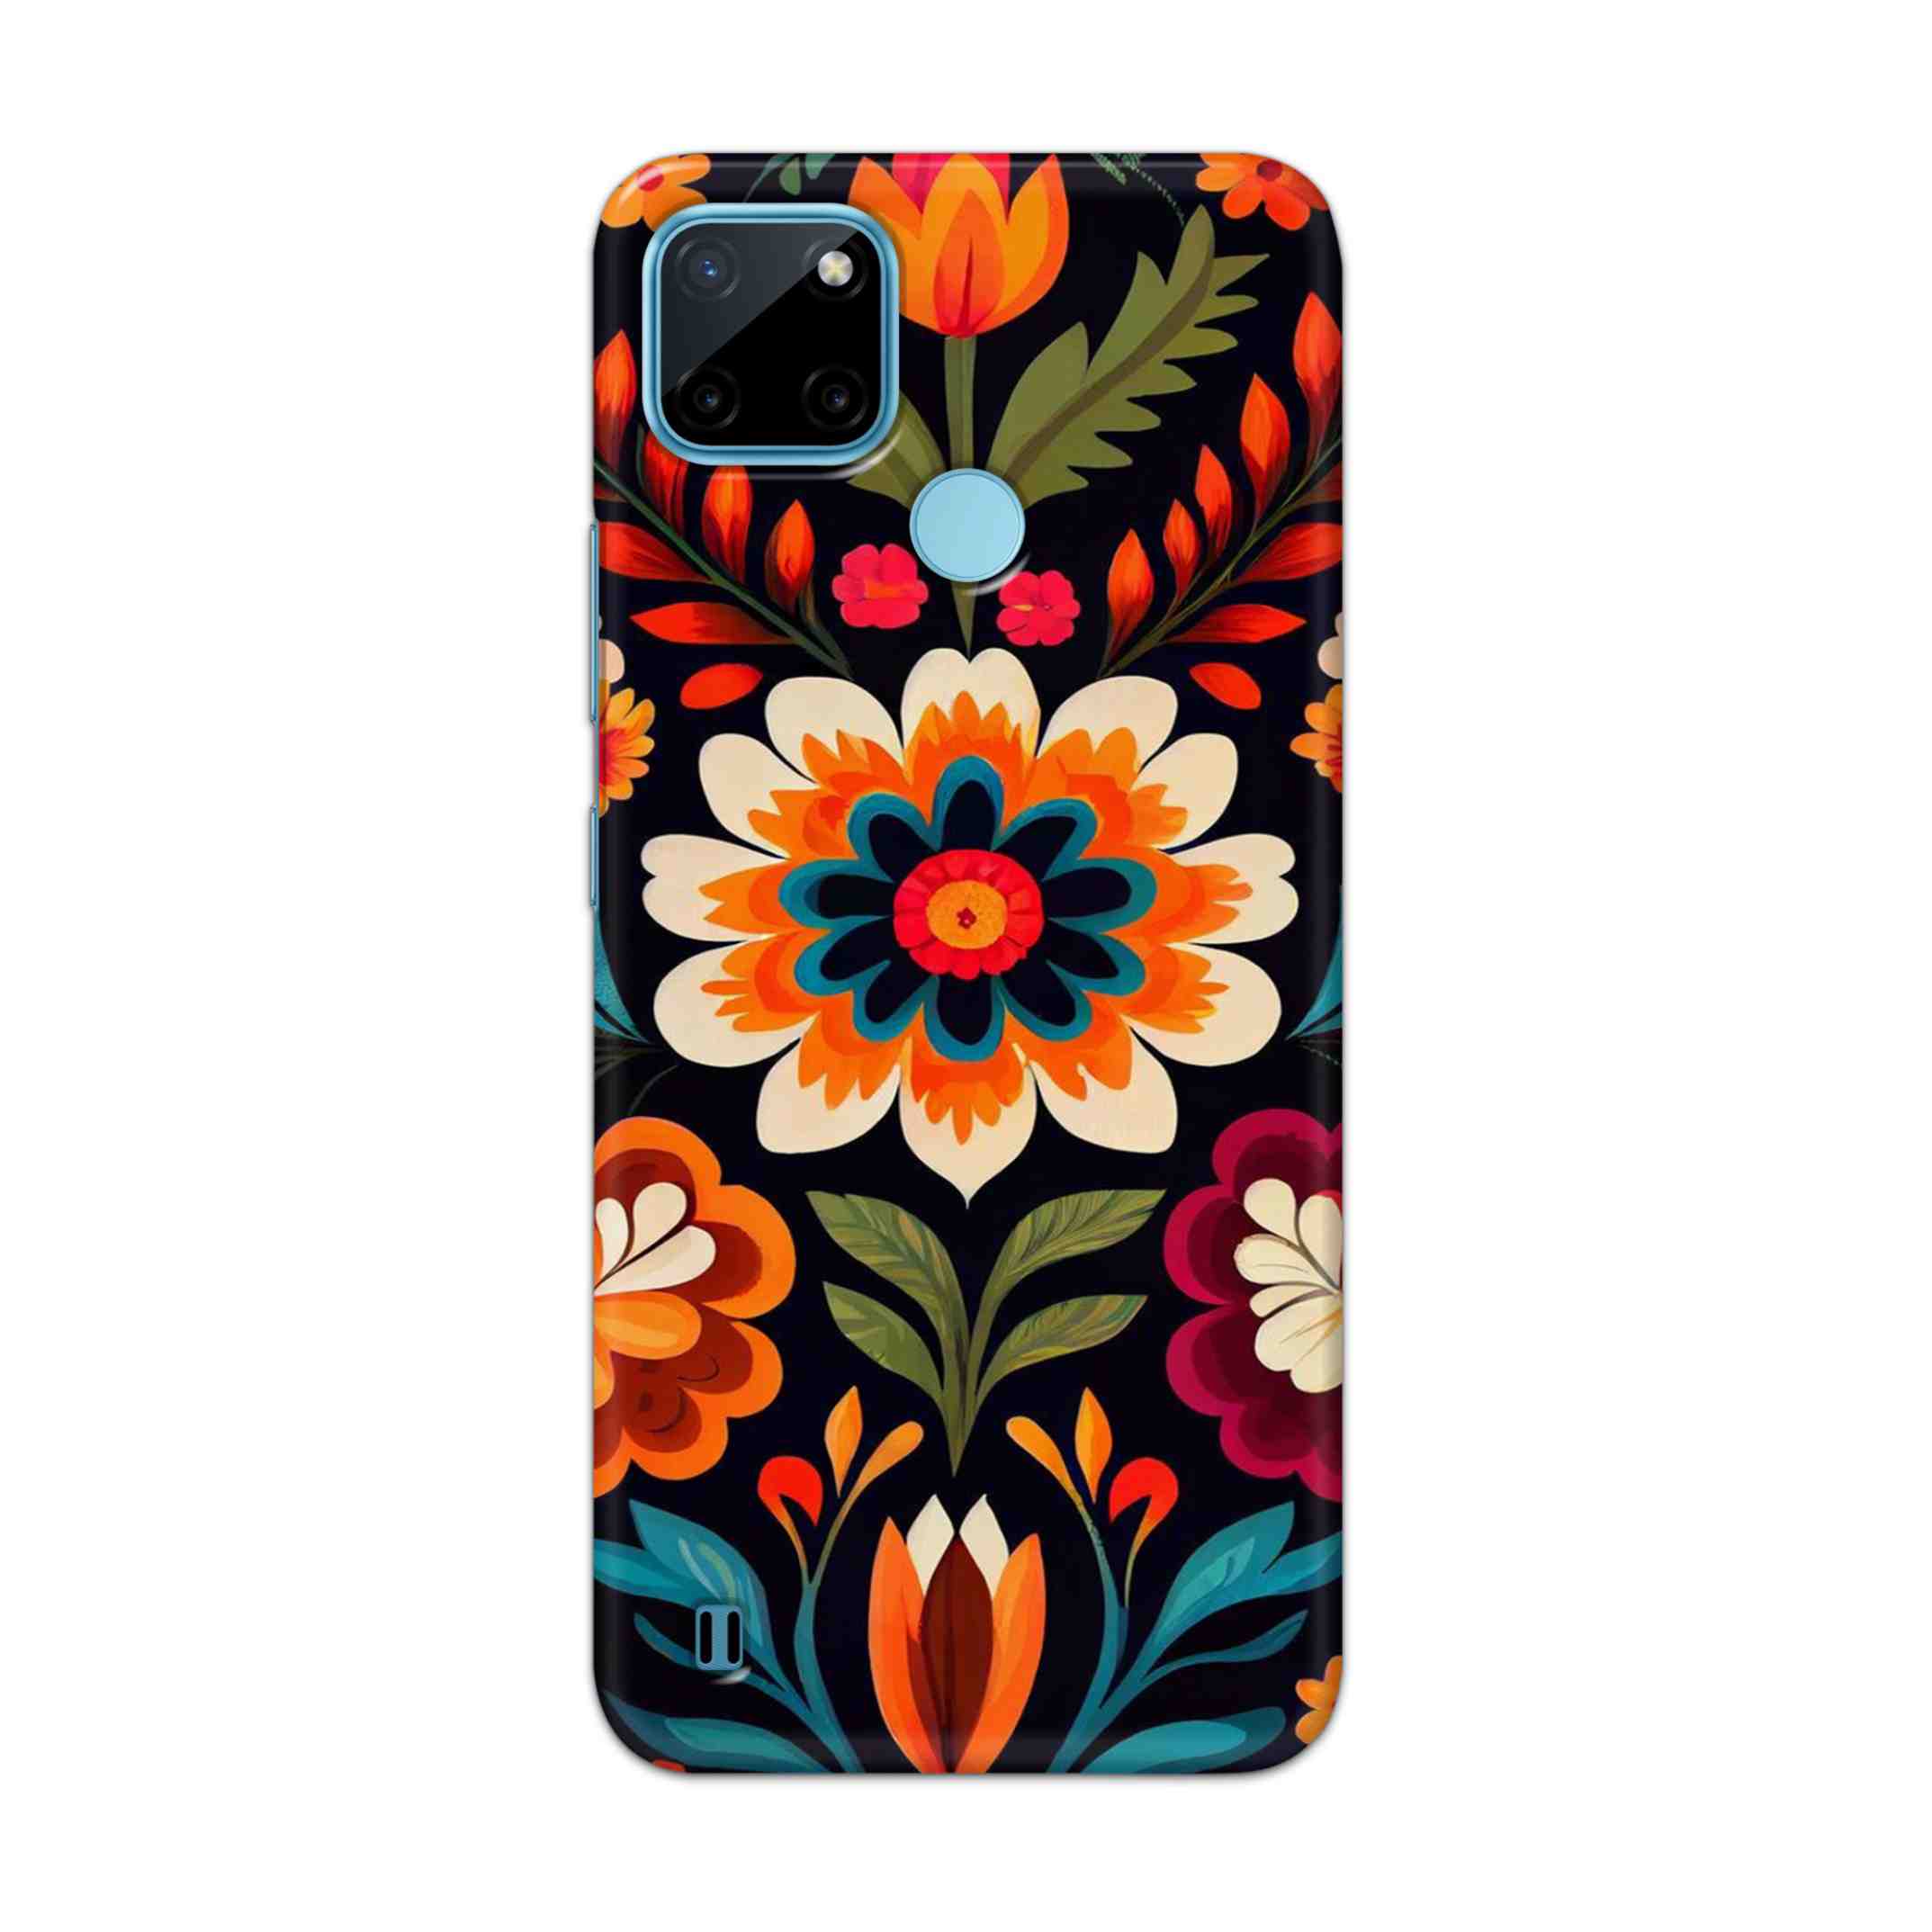 Buy Flower Hard Back Mobile Phone Case Cover For Realme C21Y Online